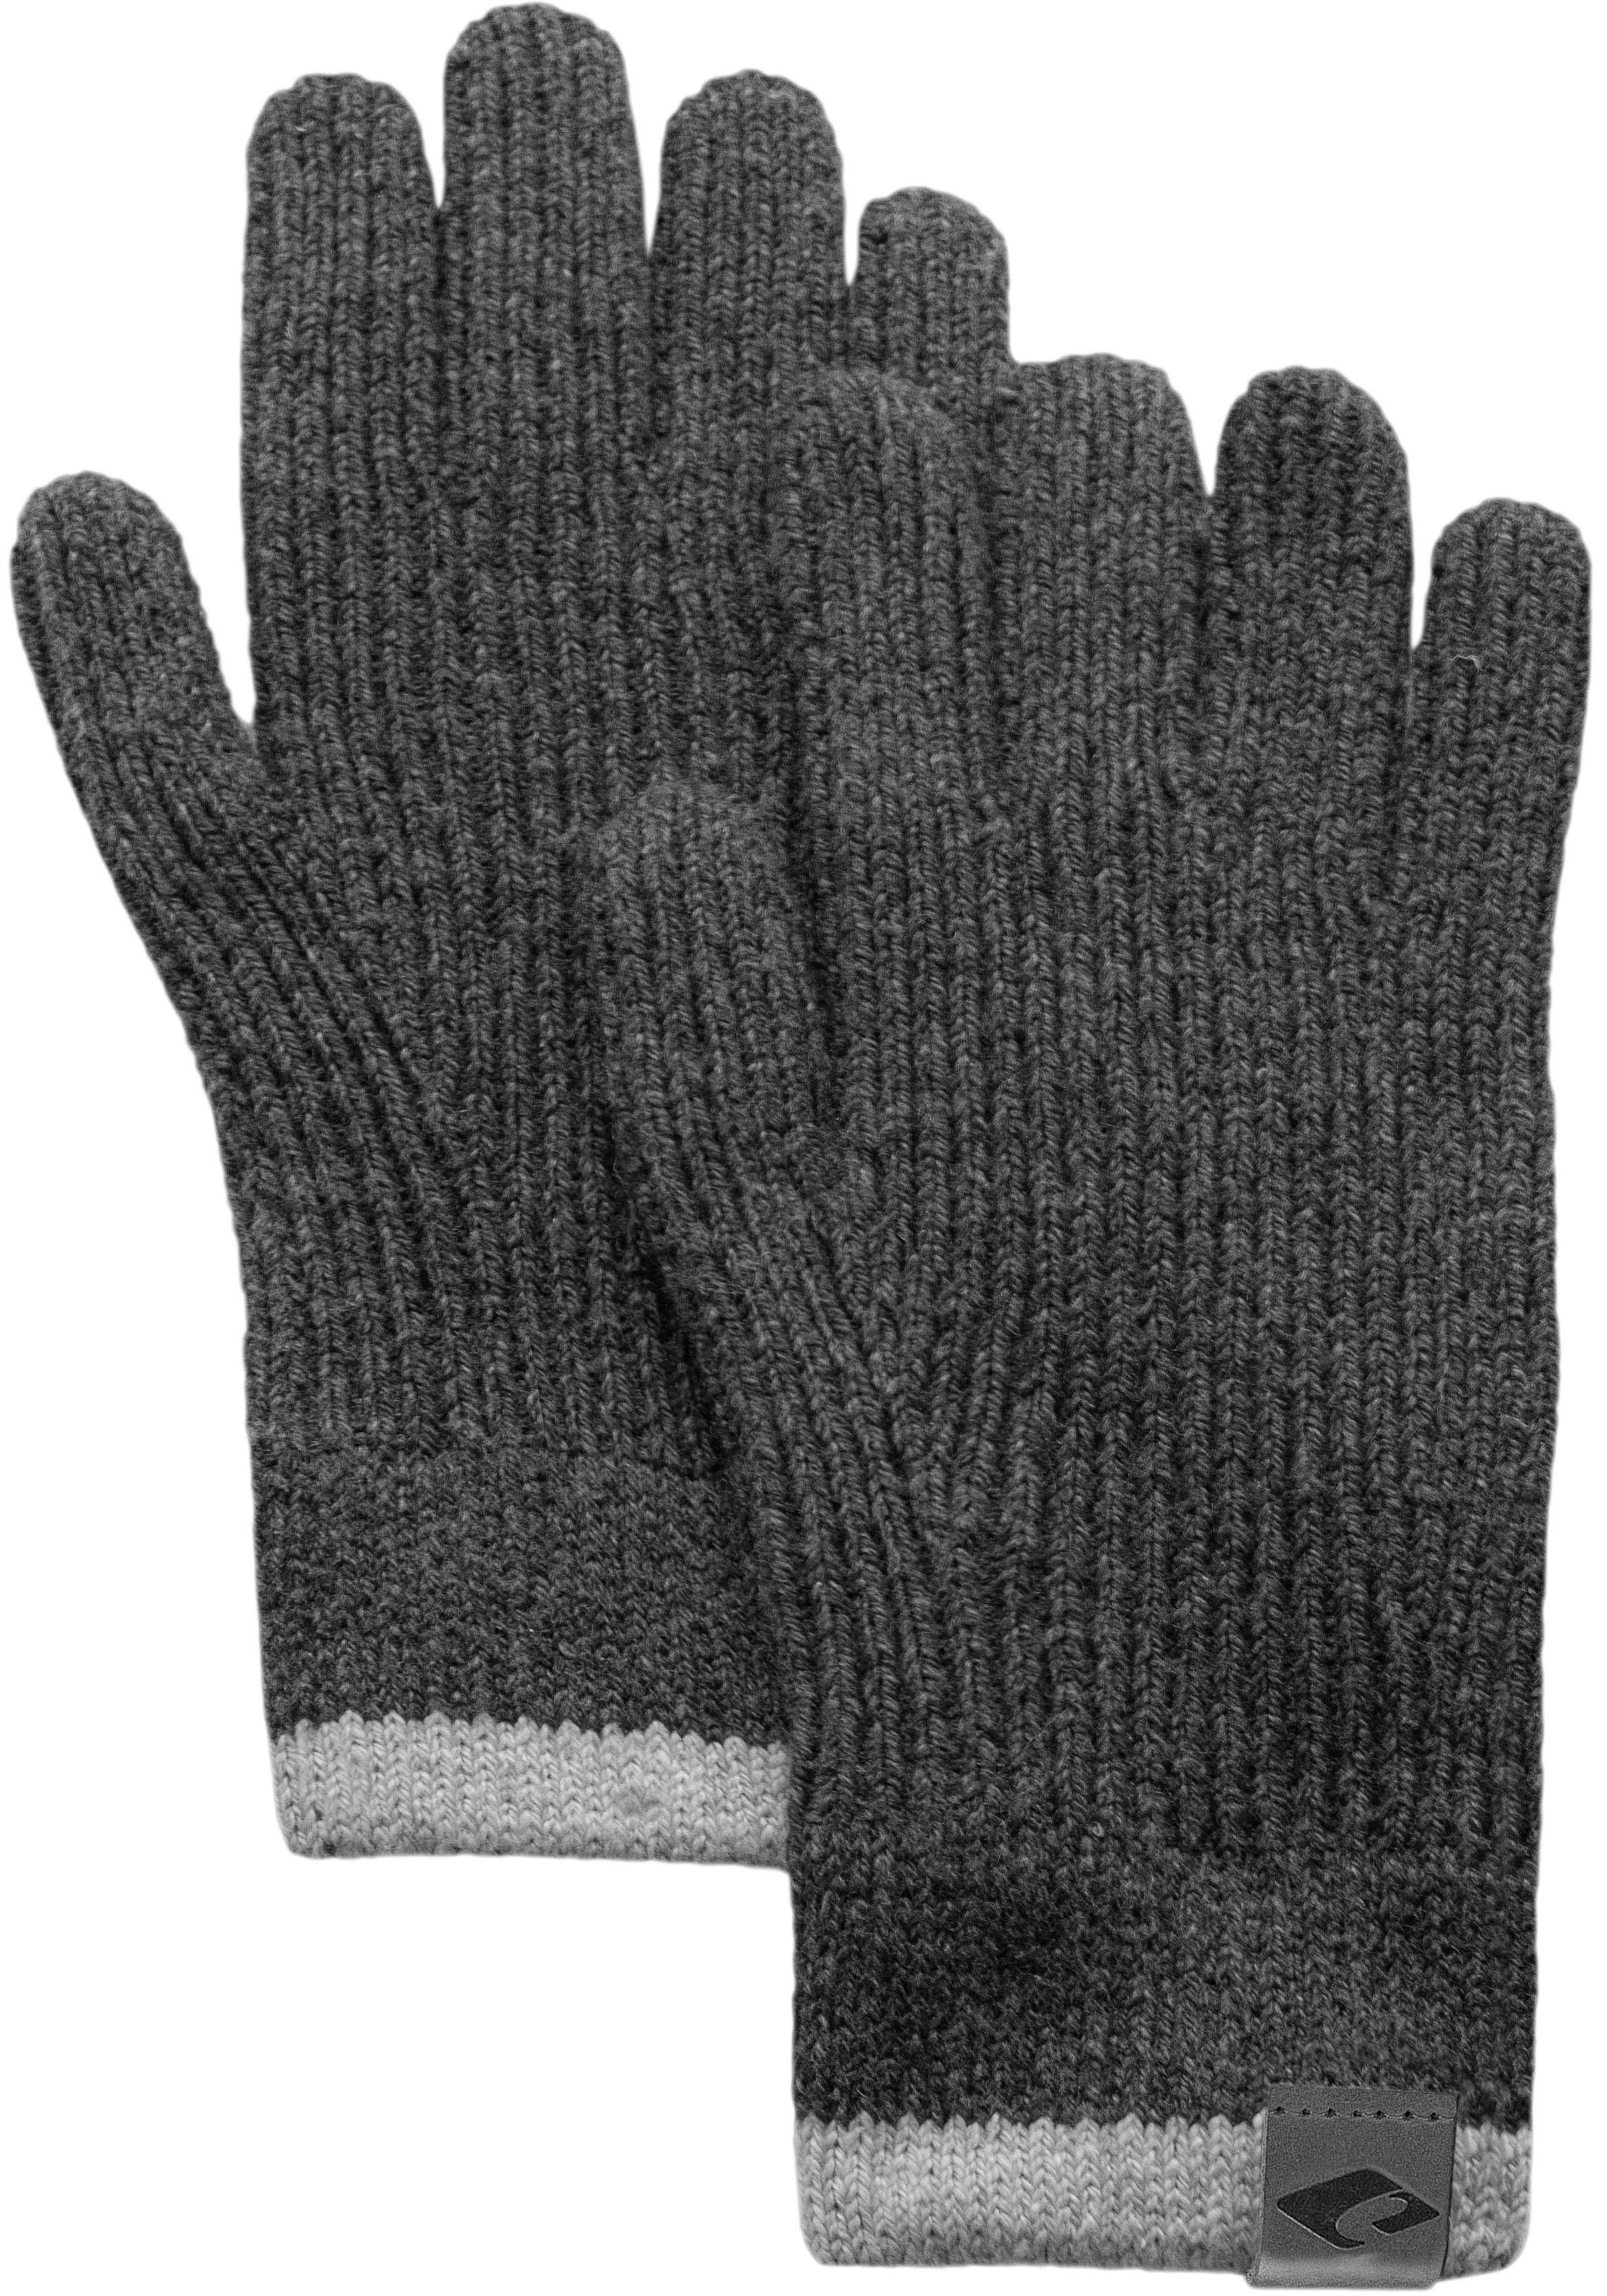 Diese Woche beliebt chillouts Strickhandschuhe Handschuhe gestrickt, grey mit Kontrastrand dark Fingerhandschuhe